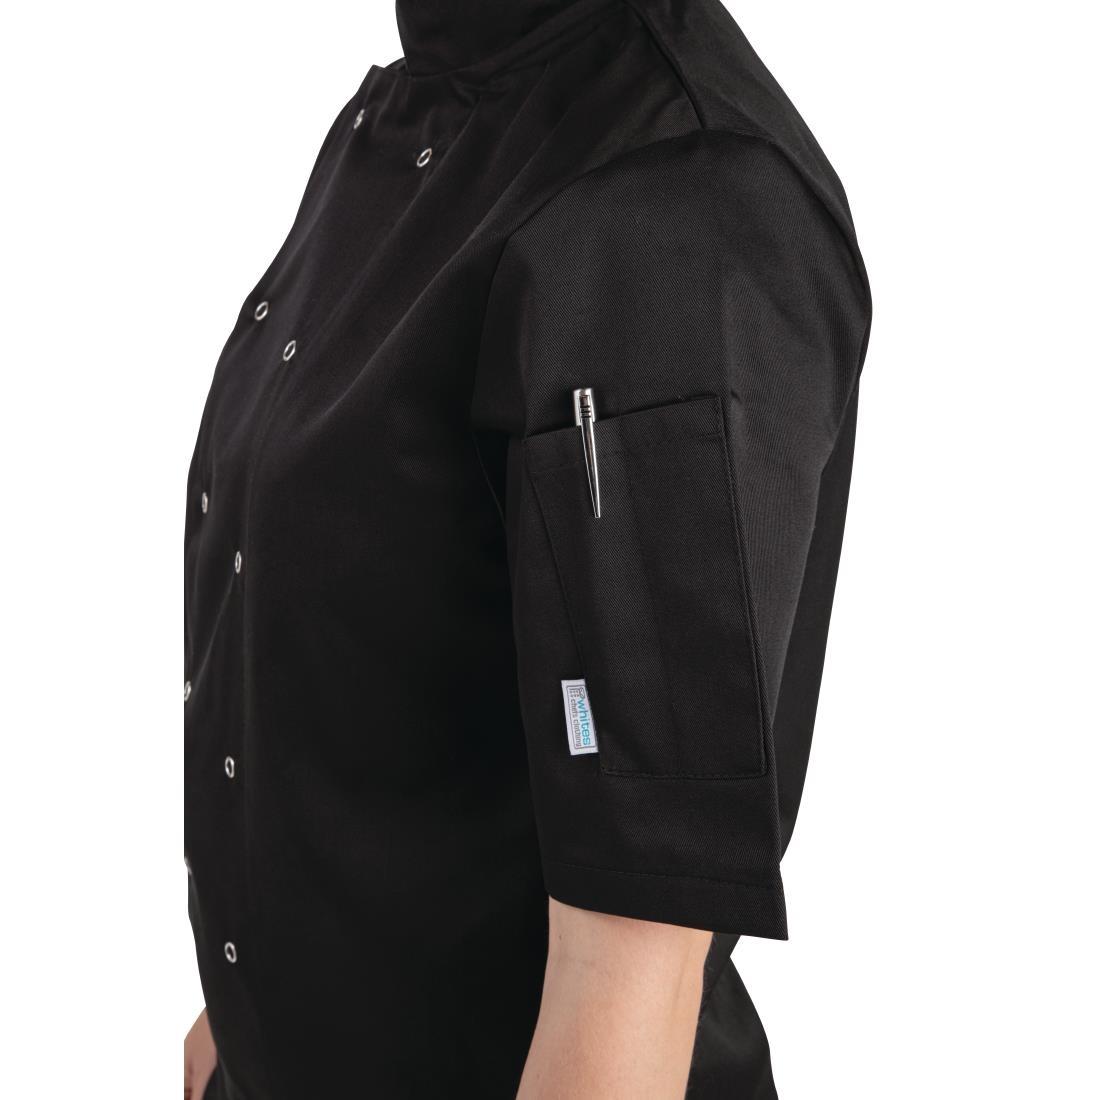 Whites Vegas Unisex Chefs Jacket Short Sleeve Black 4XL - A439-4XL  - 4